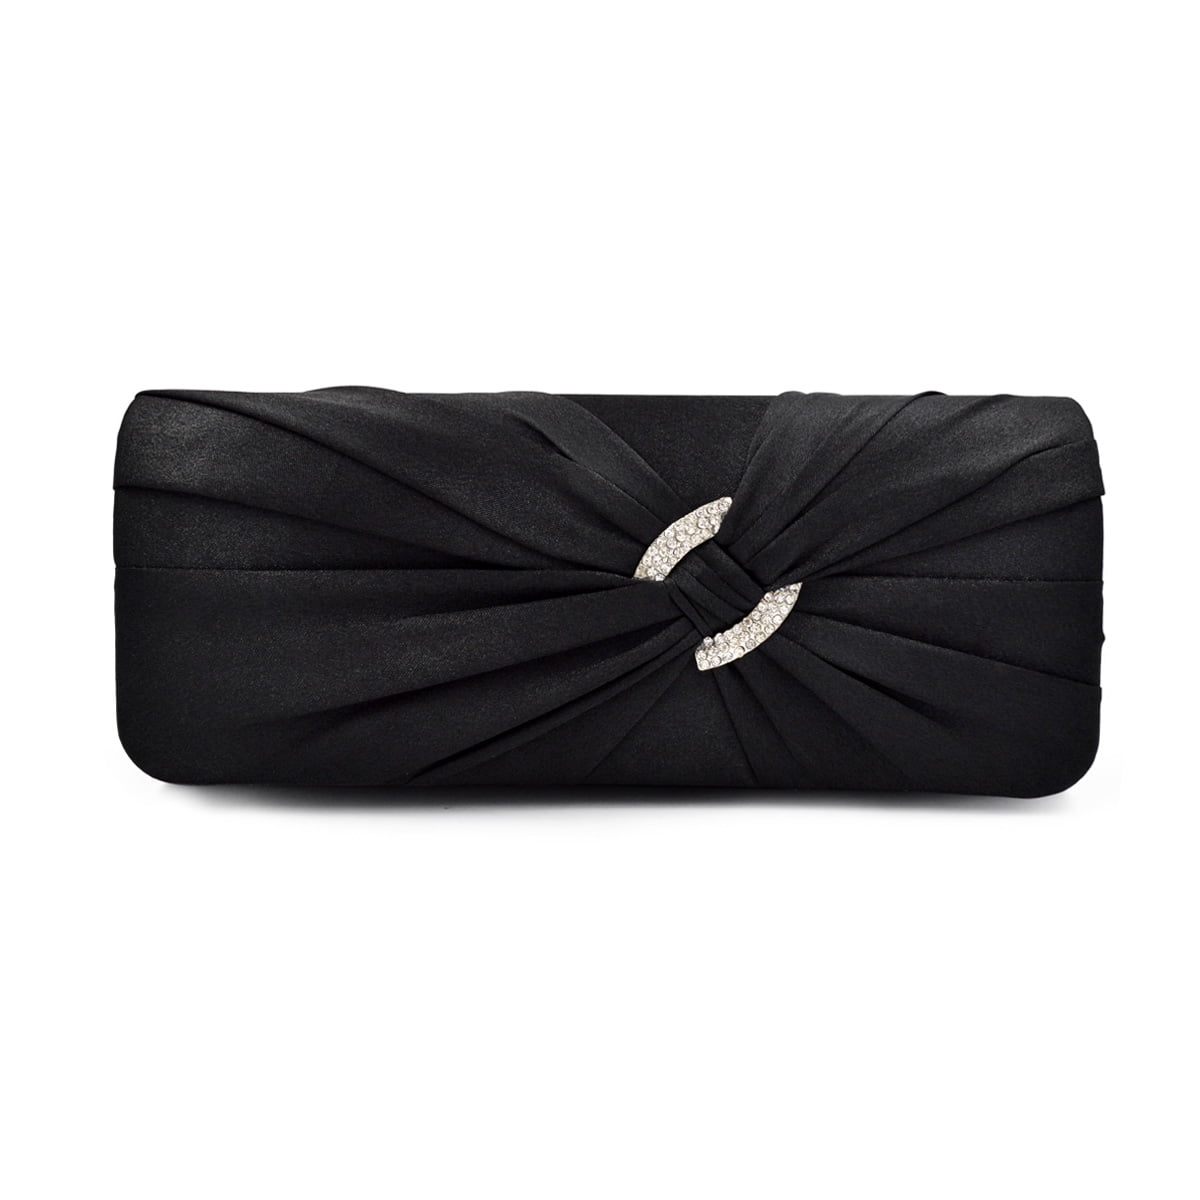 Black Cloth With Rhinestones Evening Bag / Clutch / Purse by 